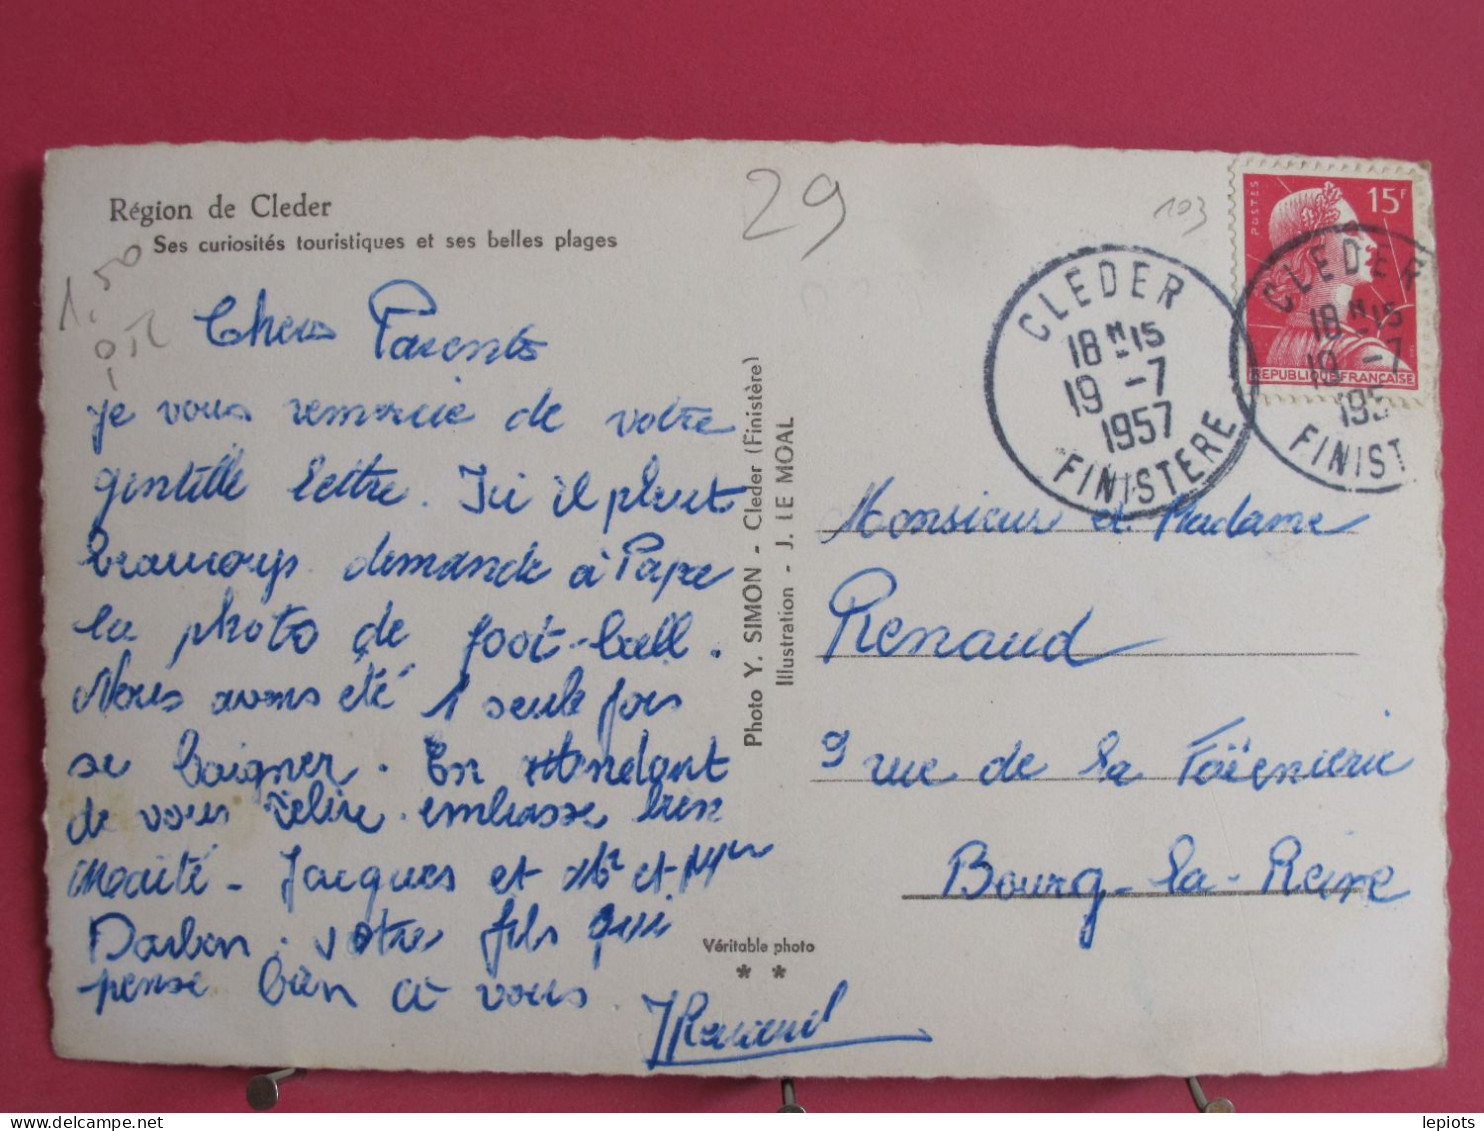 Visuel Pas Très Courant - 29 - Région De Cléder - Ses Curiosités Touristiques Et Ses Belles Plages - 1957 - Cléder